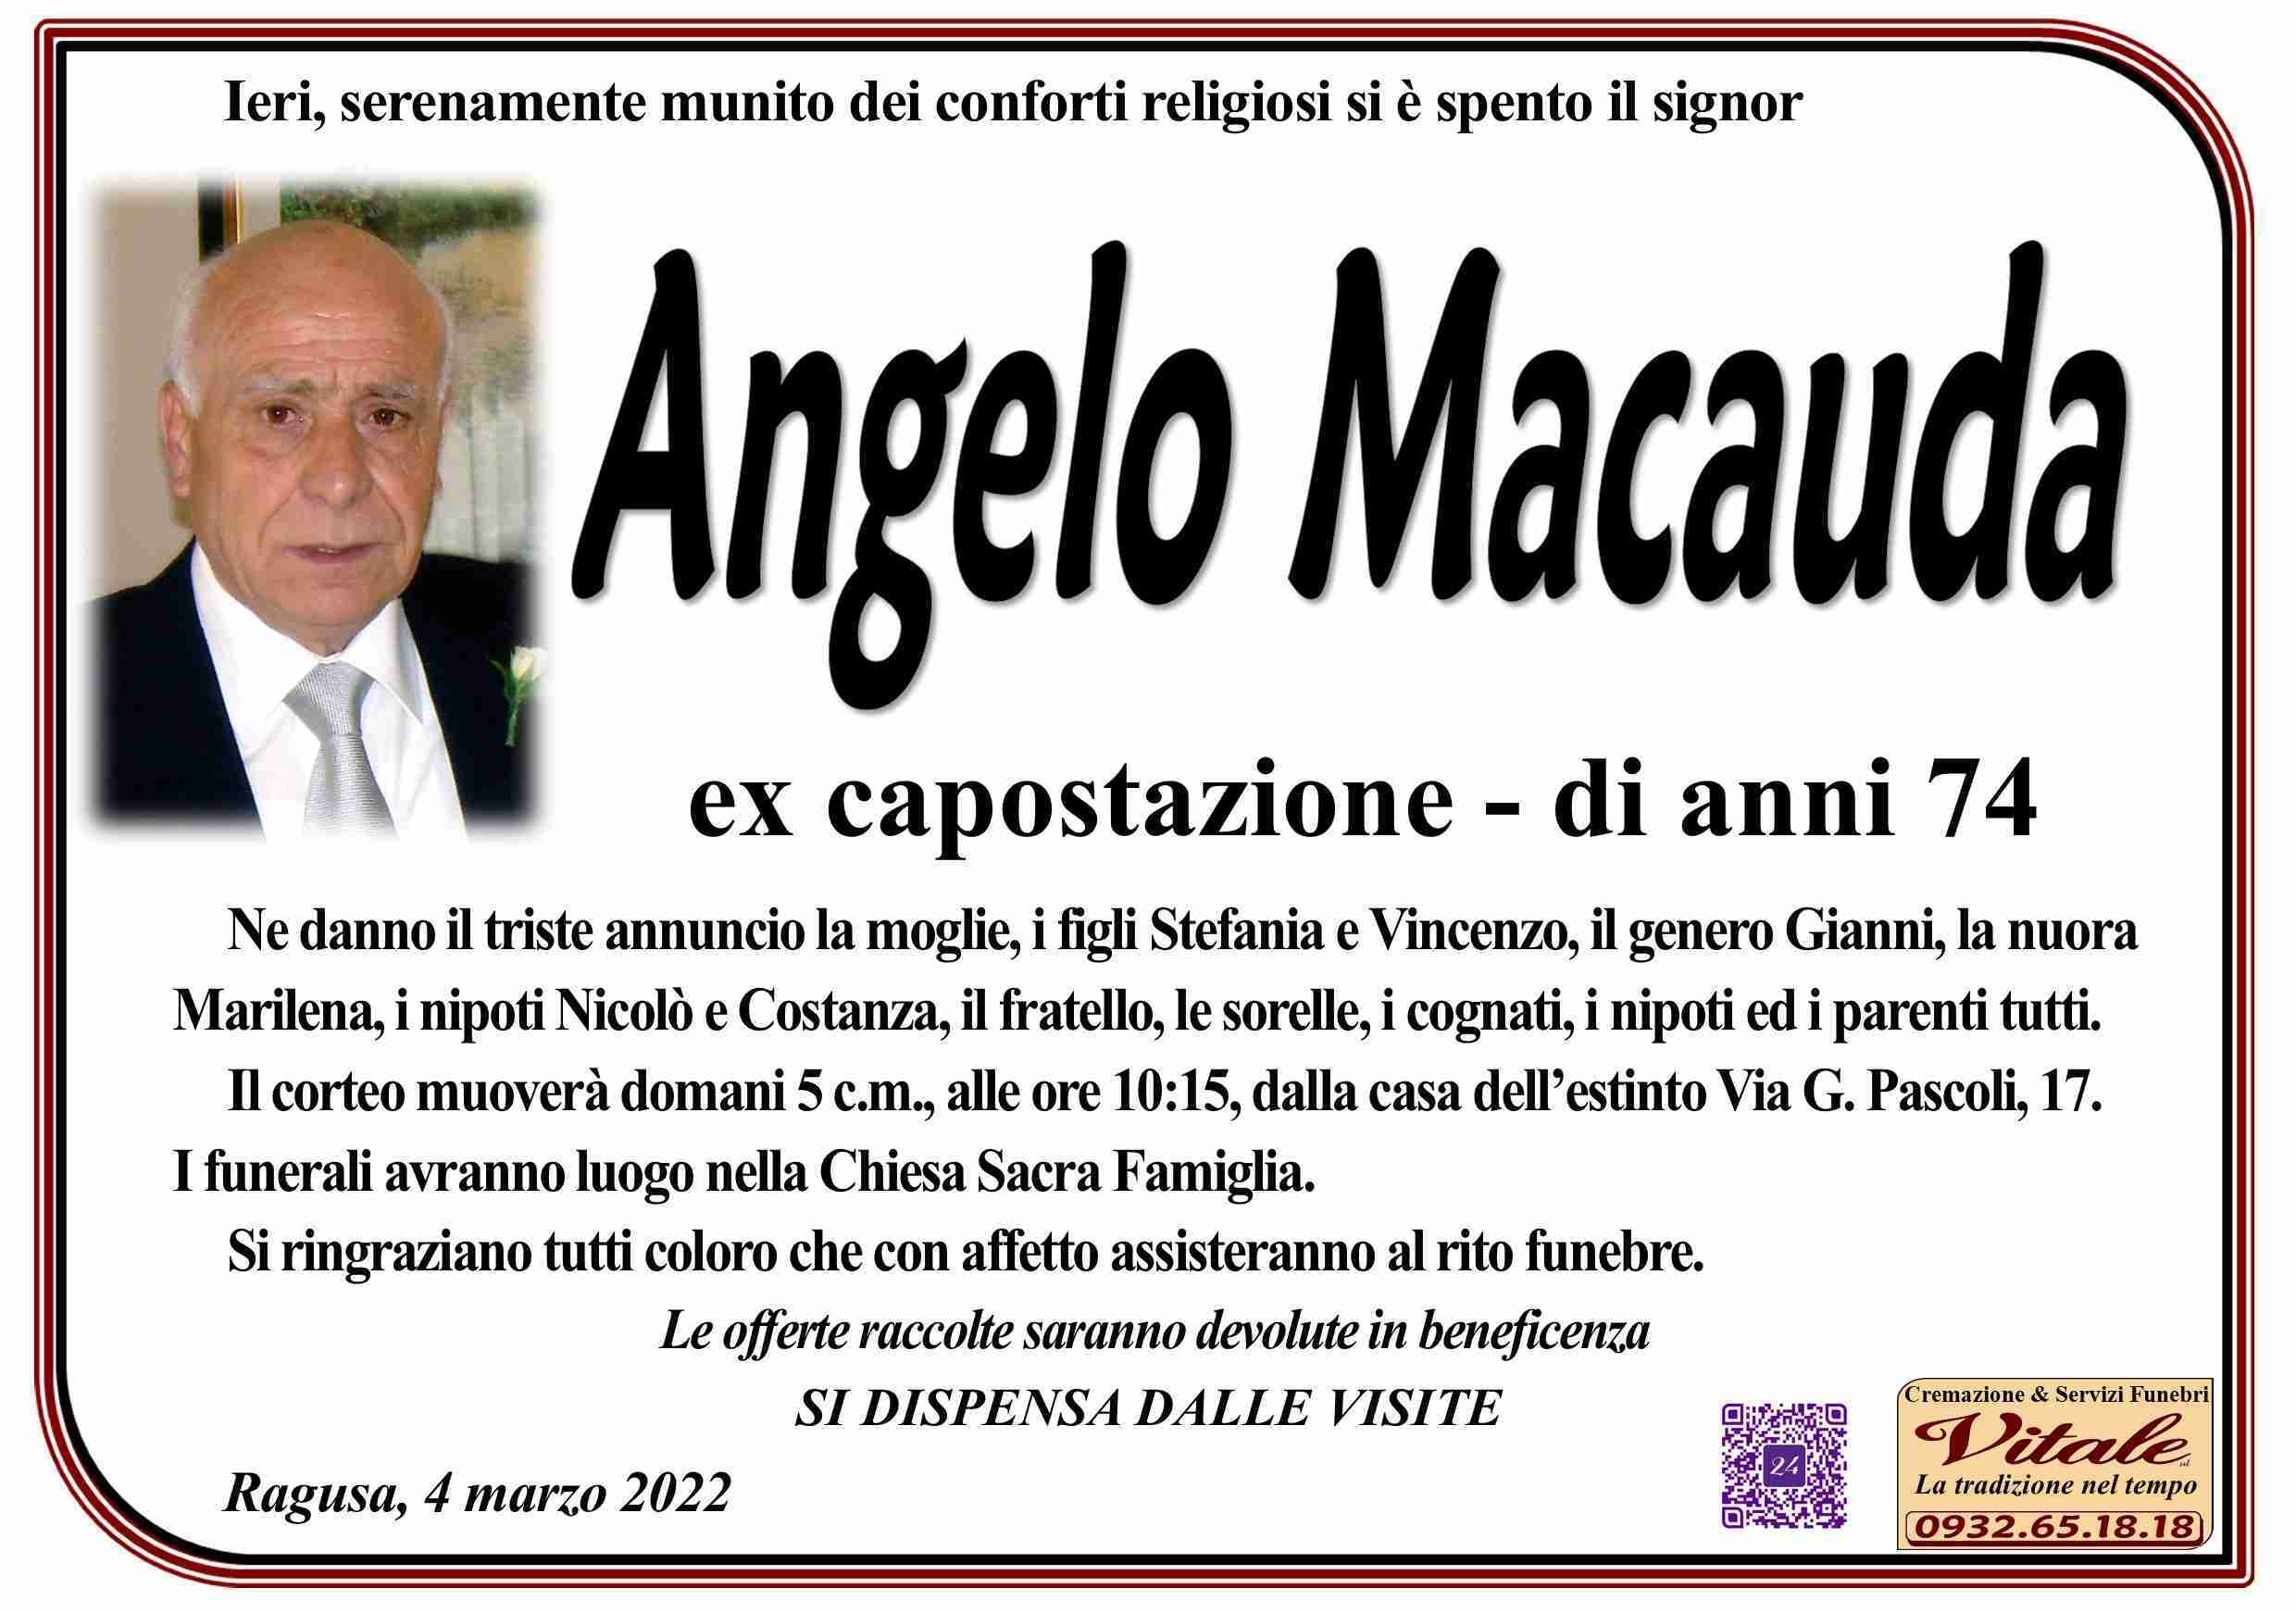 Angelo Macauda